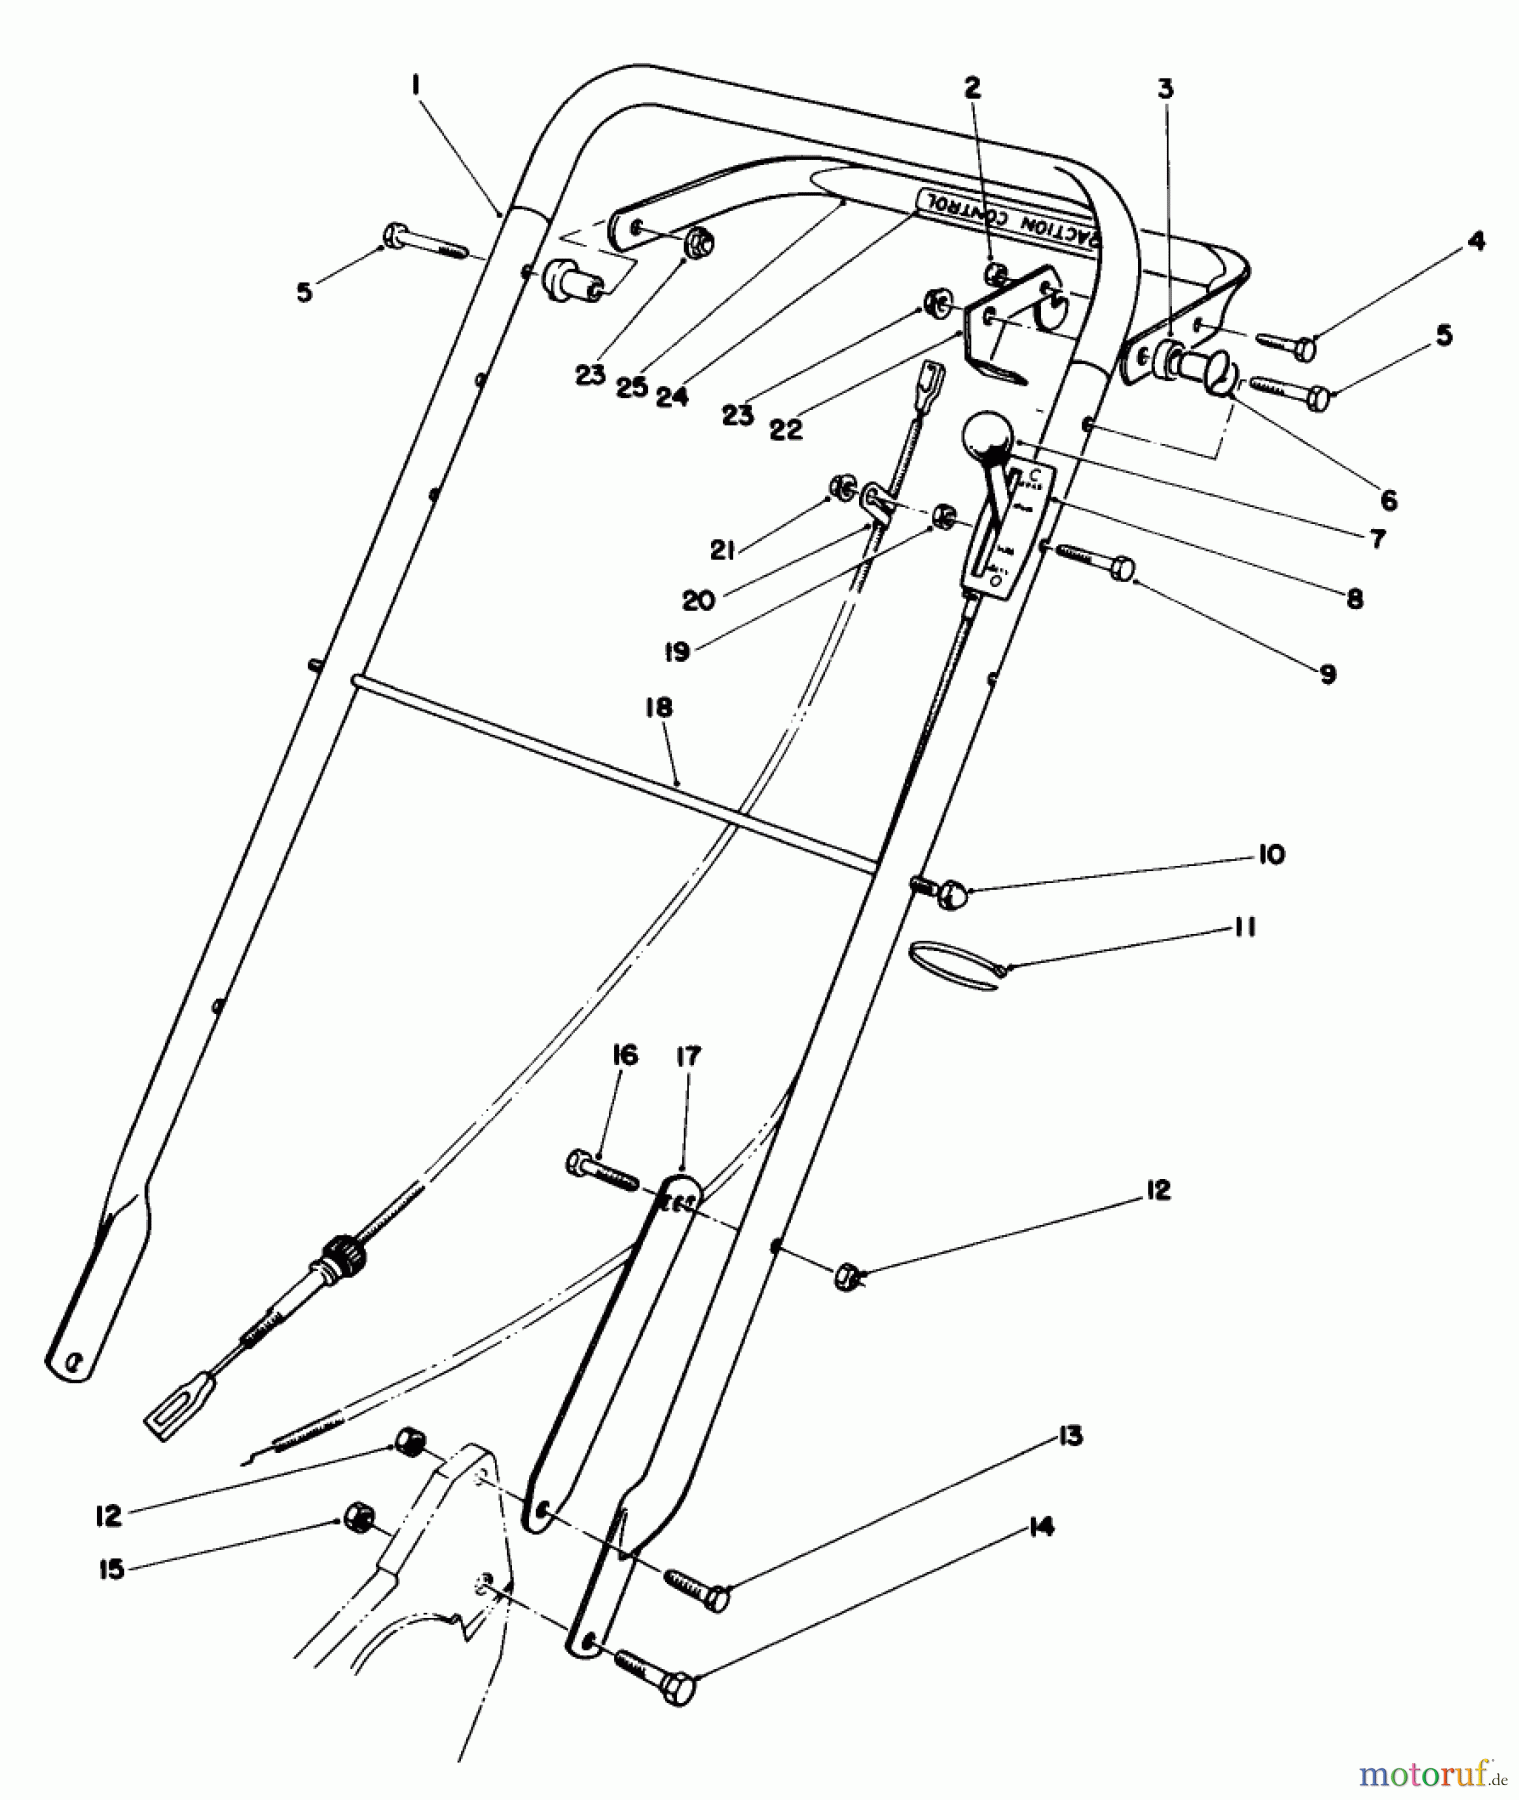  Toro Neu Mowers, Walk-Behind Seite 2 22525 - Toro Lawnmower, 1987 (7000001-7999999) HANDLE ASSEMBLY (MODEL NO. 22621)